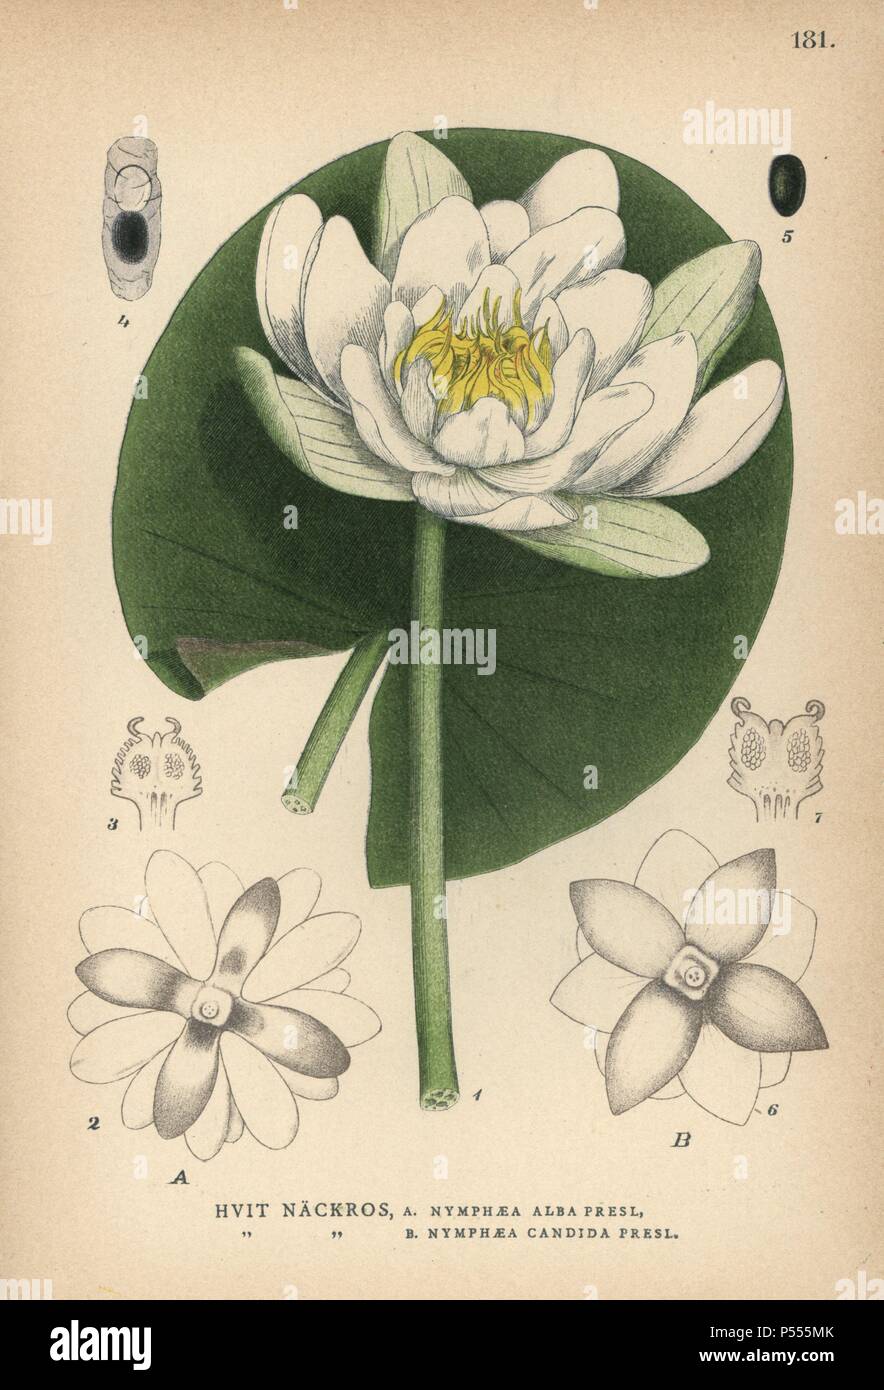 Nénuphar blanc, white lotus ou nenuphar, Nymphaea alba Presl. et Nymphaea candida Presl. Chromolithographie de Carl Lindman's 'Bilder ur Nordens Flora' (Photos de la Flore du Nord), Stockholm, Wahlström & Widstrand, 1905. Lindman (1856-1928) était professeur de botanique à la Swedish Museum of Natural History (Naturhistoriska Riksmuseet). L'chromolithographs étaient fondées sur l'Palmstruch Johan Wilhelm 'Svensk botanik' (1802-1843). Banque D'Images